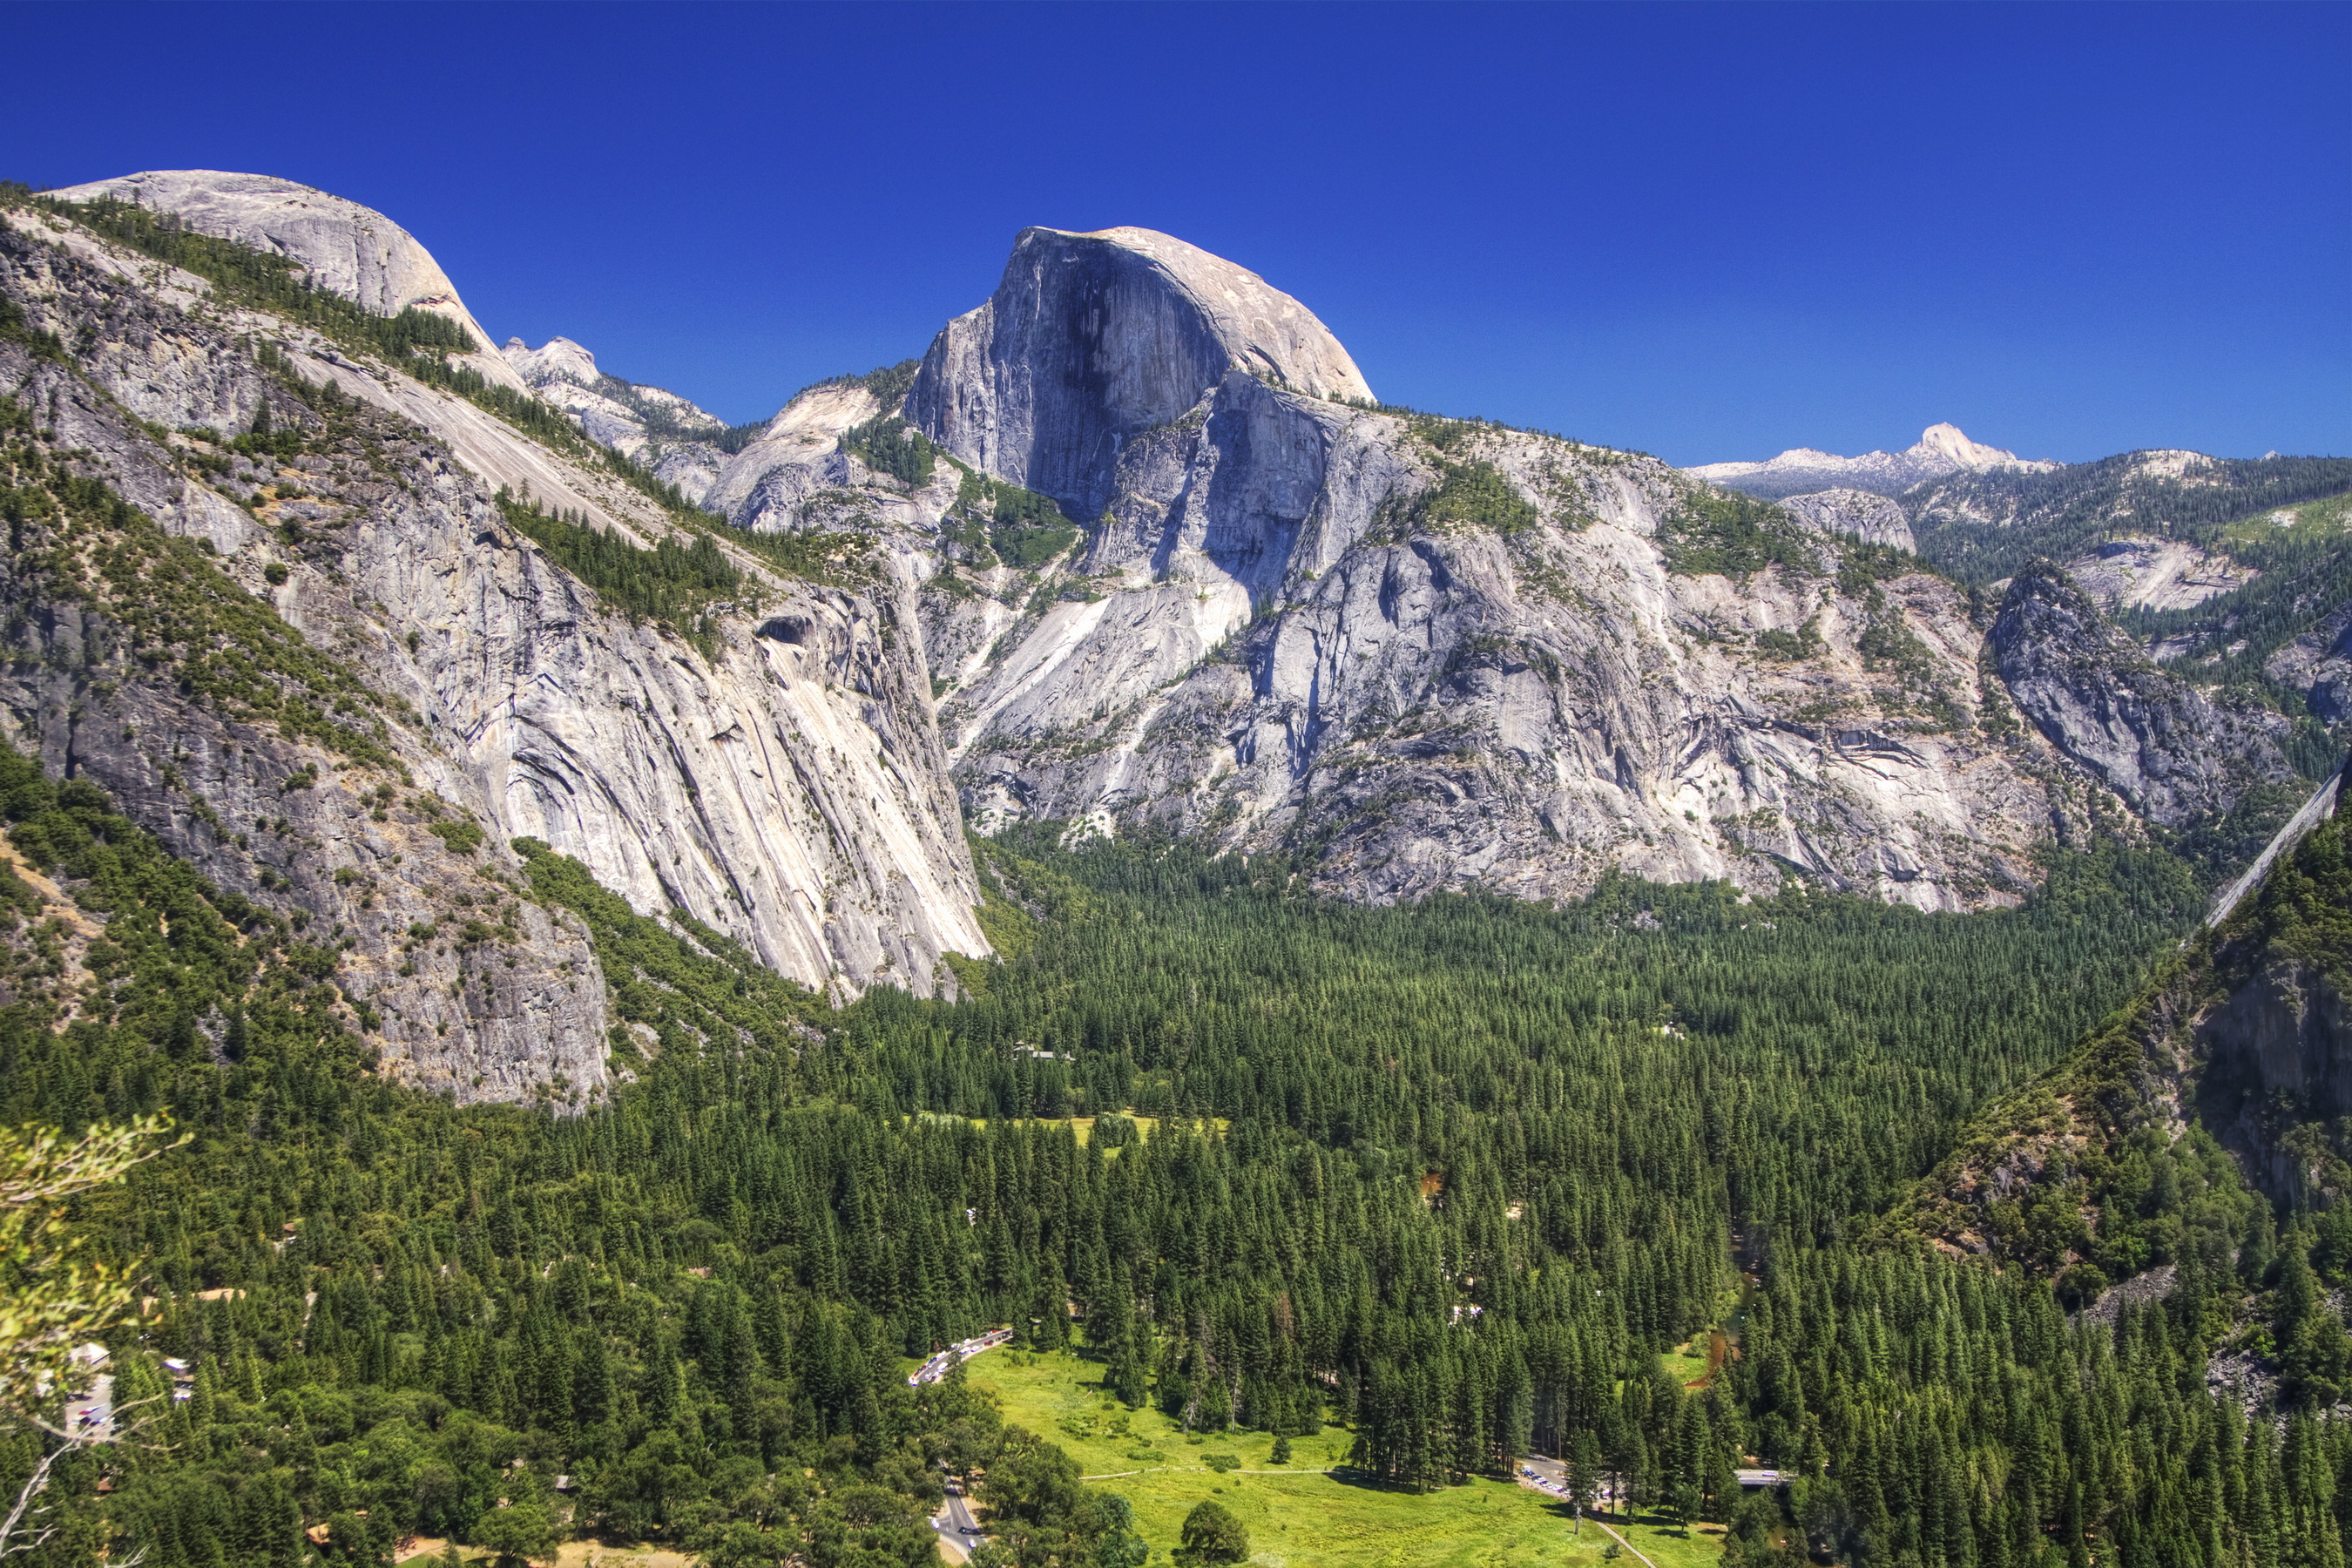 Yosemite Half Dome Wallpaper